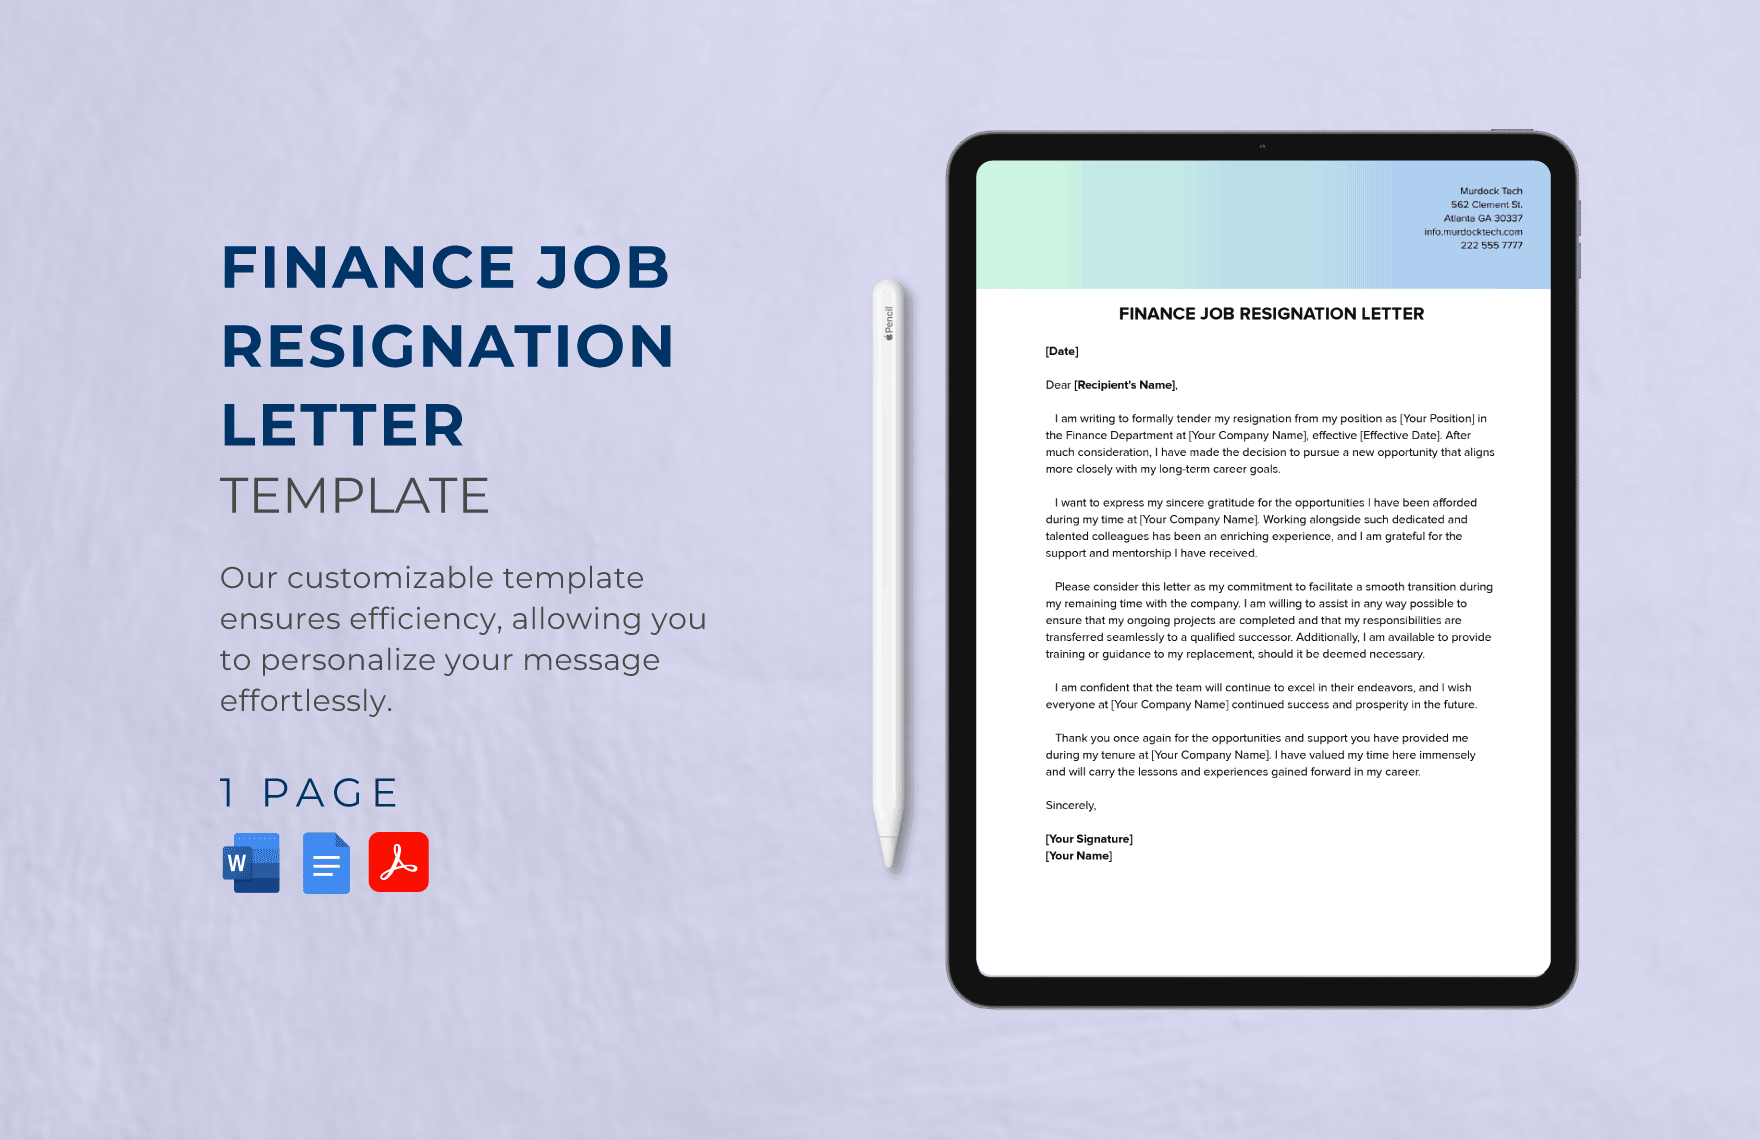 Finance Job Resignation Letter Template